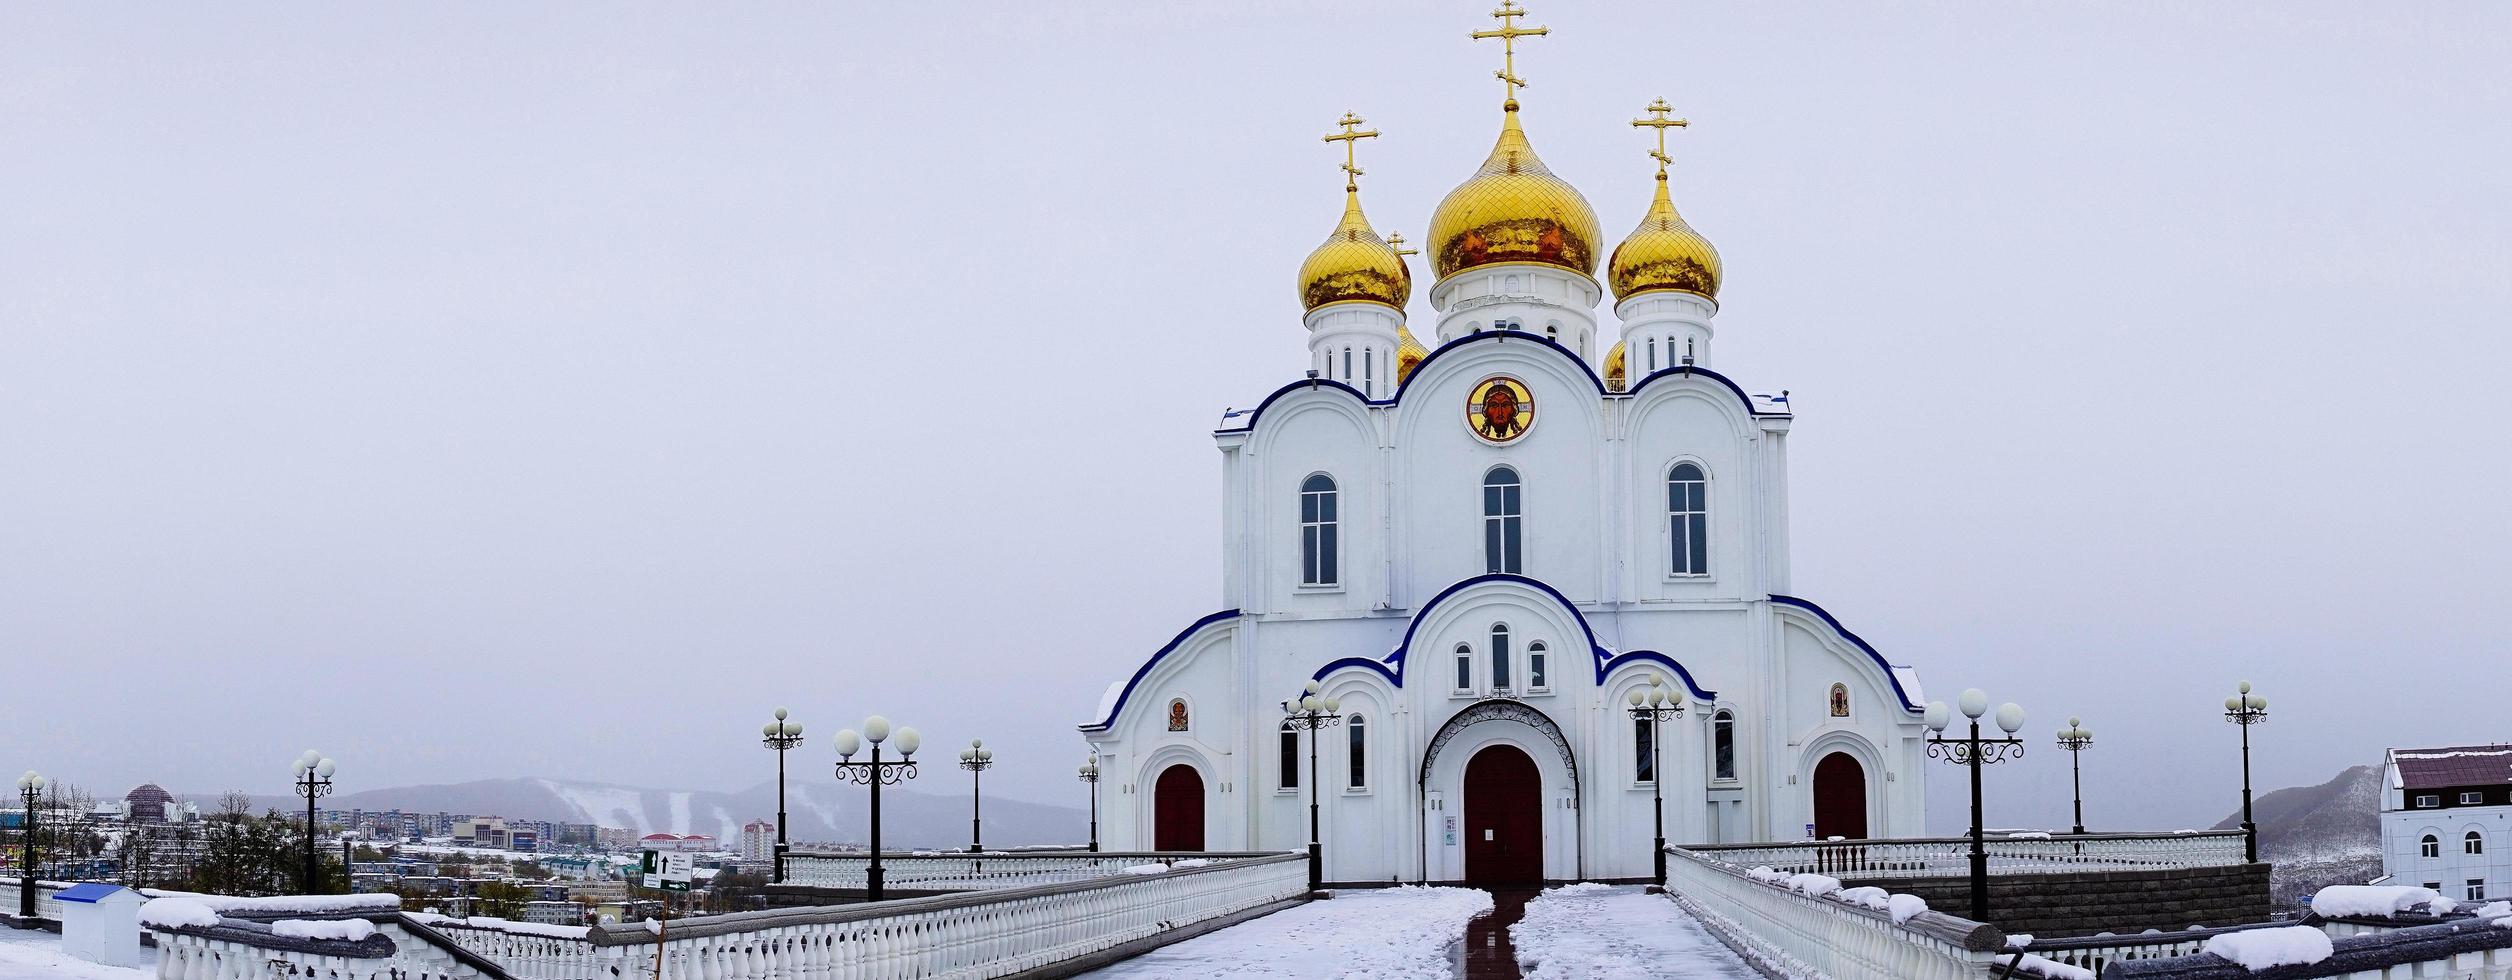 Kathedrale im Namen der heiligen, lebensspendenden Dreifaltigkeit. petropawlowsk-kamtschatski foto